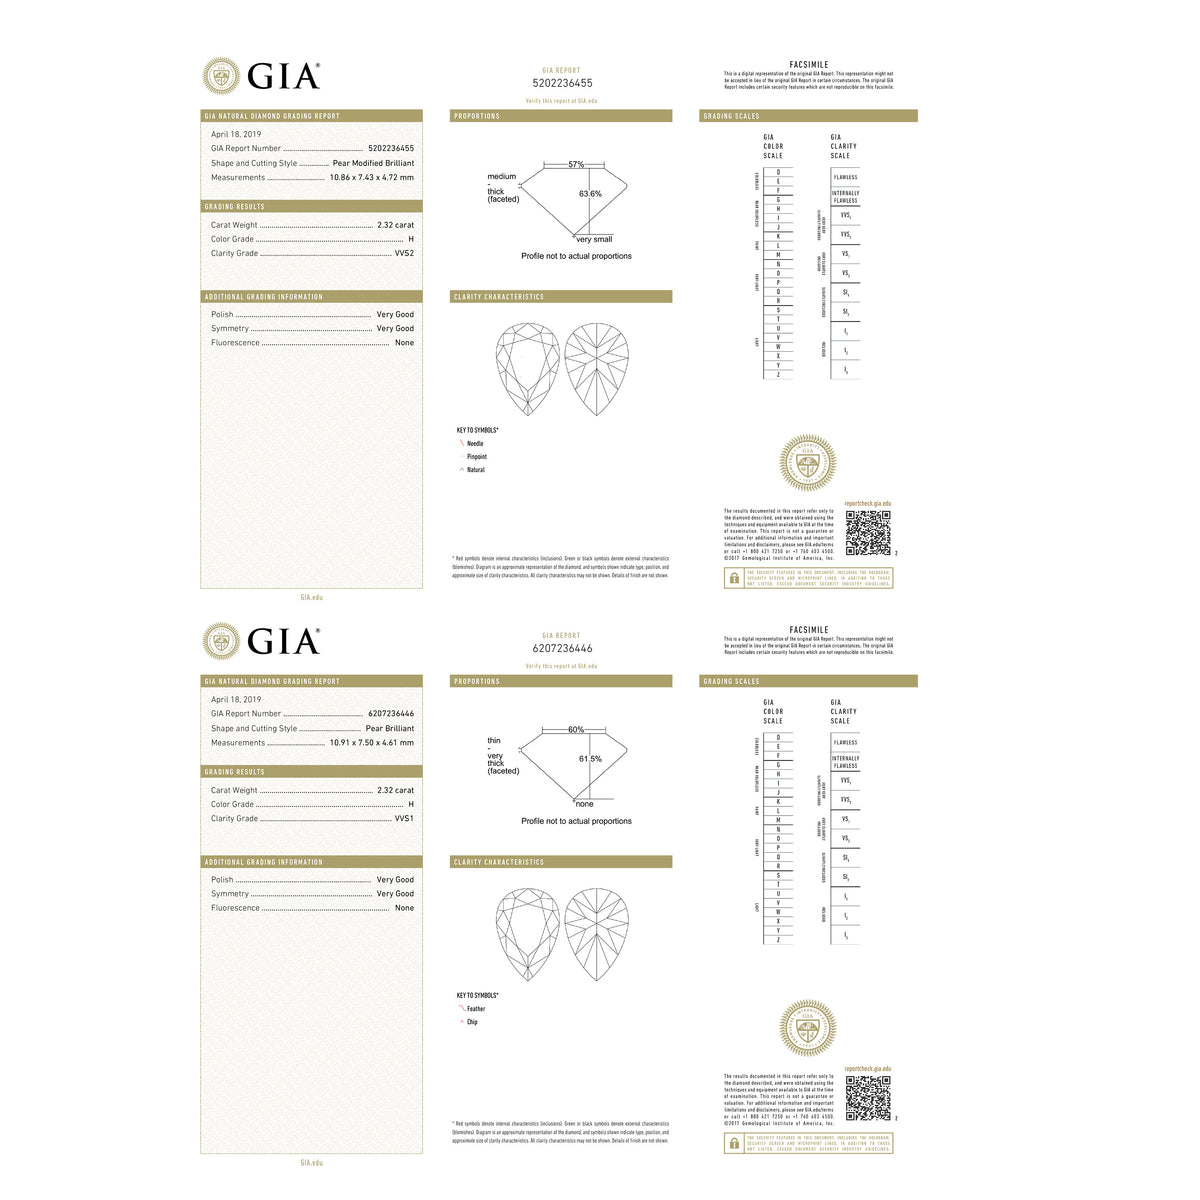 GIA Certified Tiffany & Co. Diamond Teardrop Earrings in Platinum (6.69 CTW)